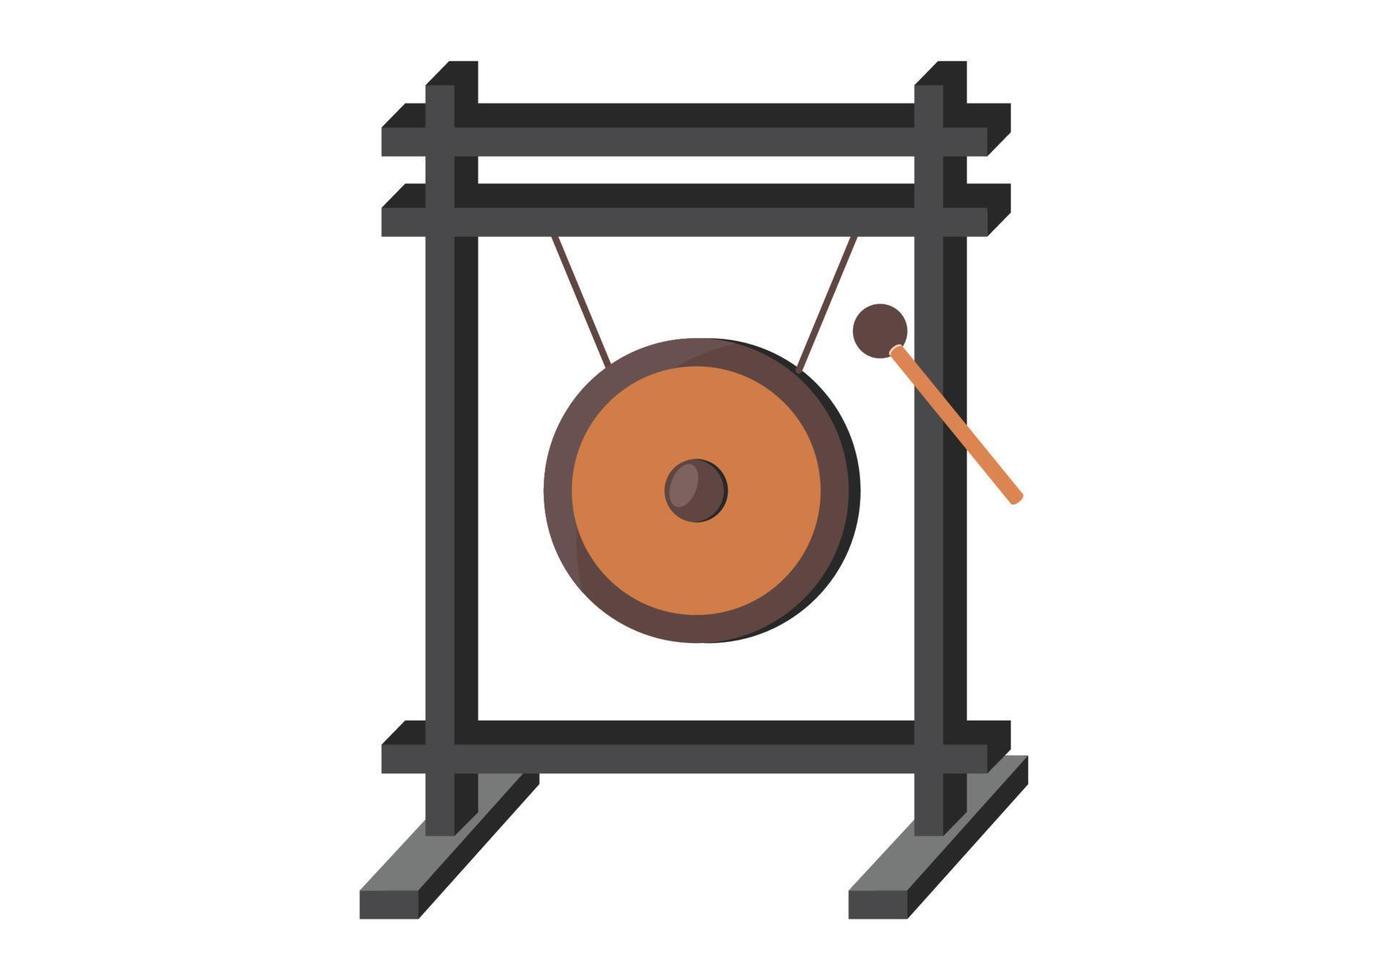 desenho vetorial de gongo de metal. ilustração em vetor estilo plano de gongo instrumento de música asiática isolada no fundo branco